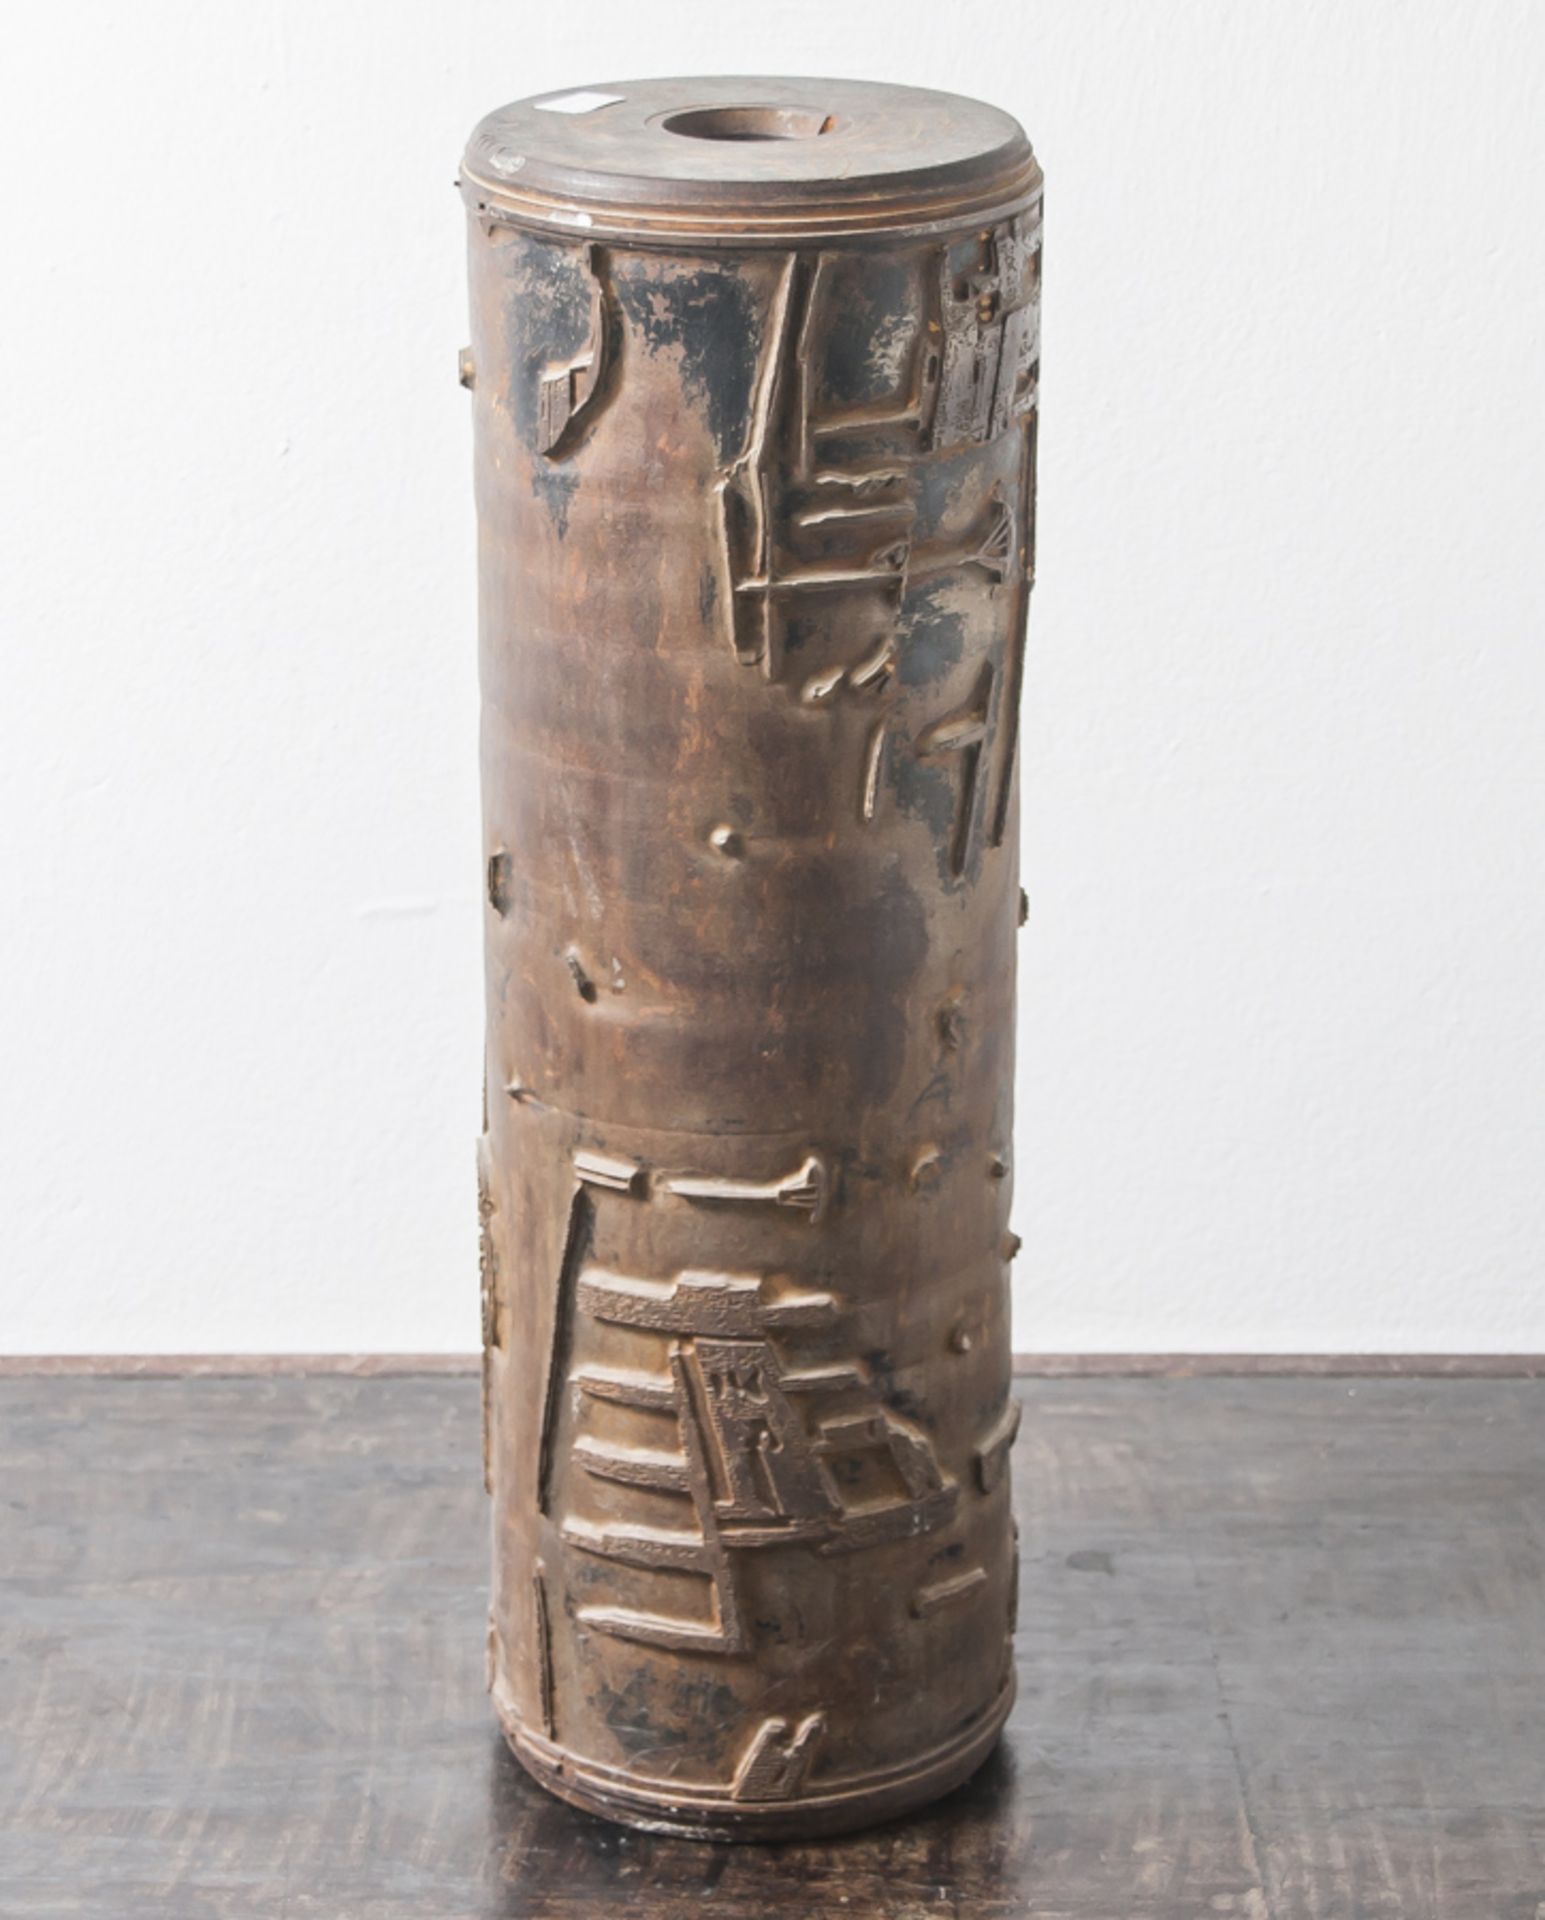 Druckwalze für Tapeten oder Stoff, Frankreich, 1. Hälfte 20. Jahrhundert, Eisen, mitArchitektur- und